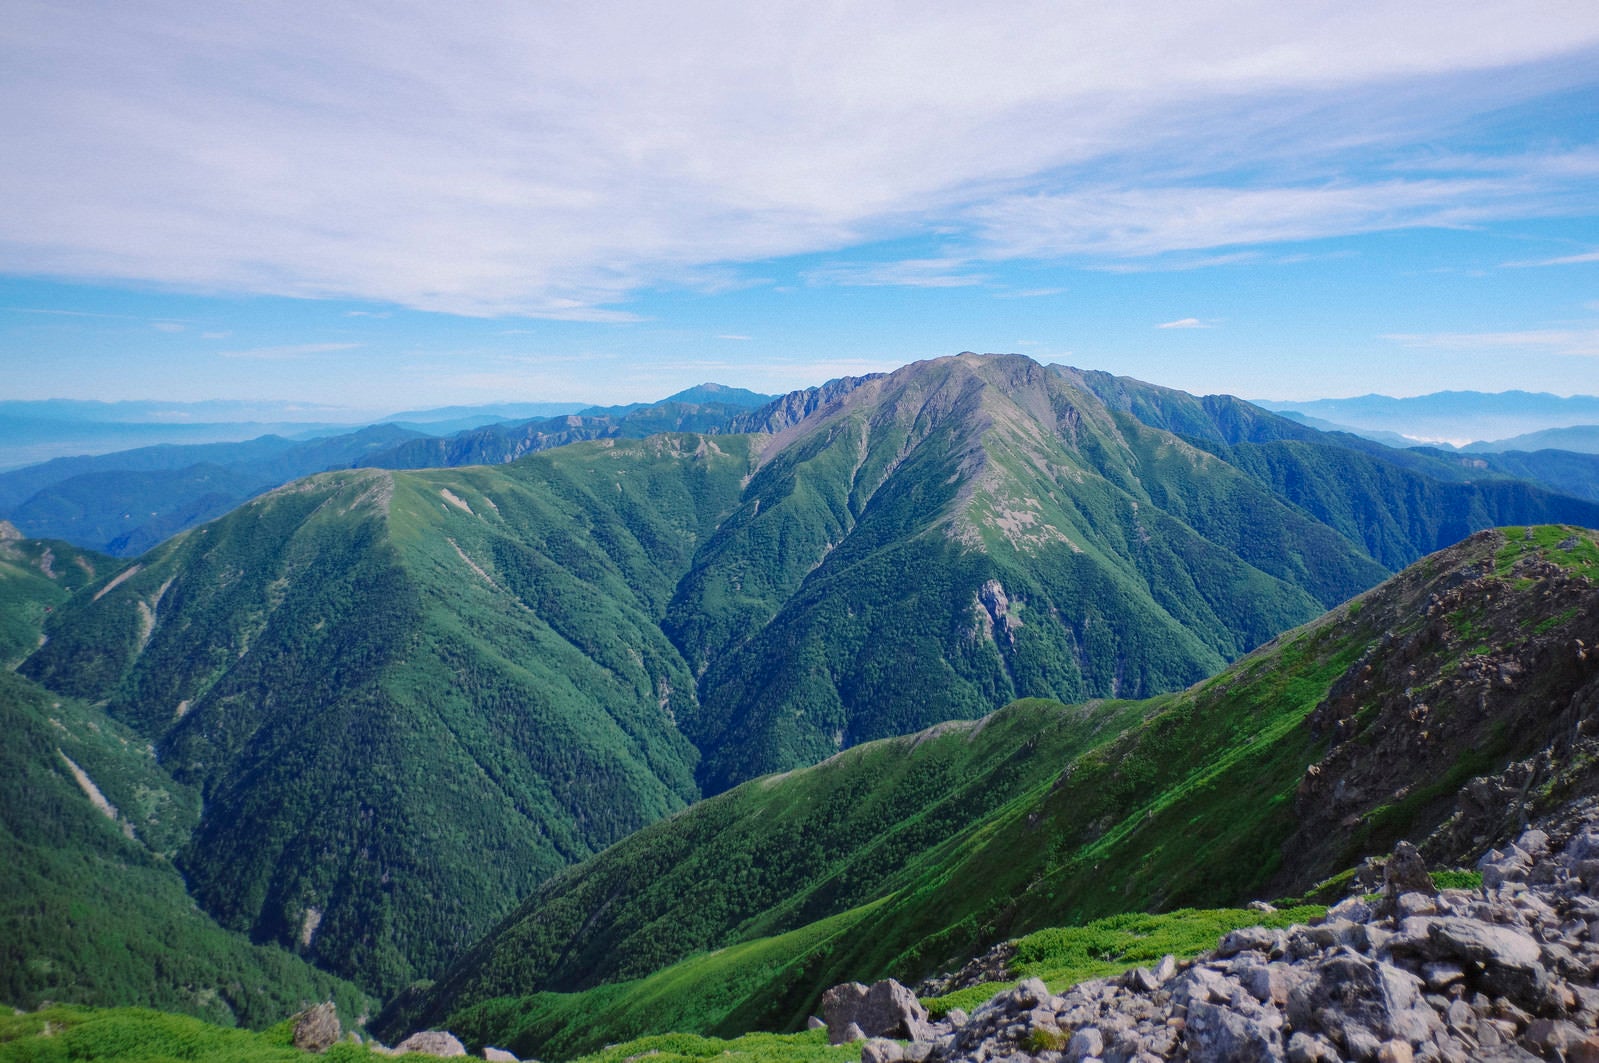 「聖岳山頂から見る南ア南部の3,000m峰」の写真